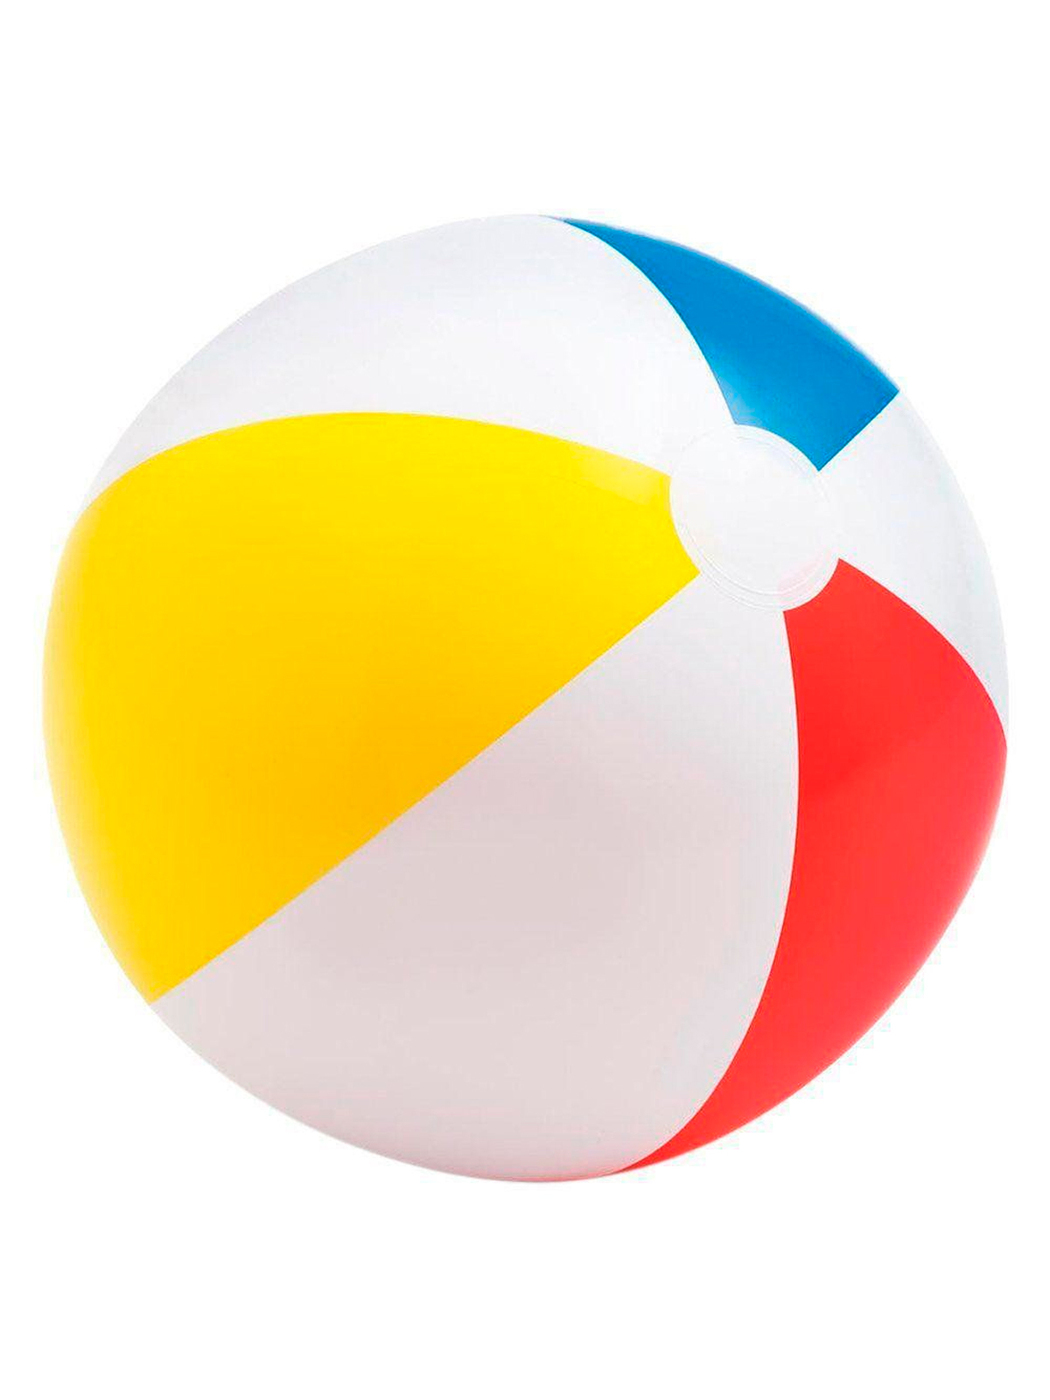 Пляжный мяч 51см, от 3 лет IN-59020